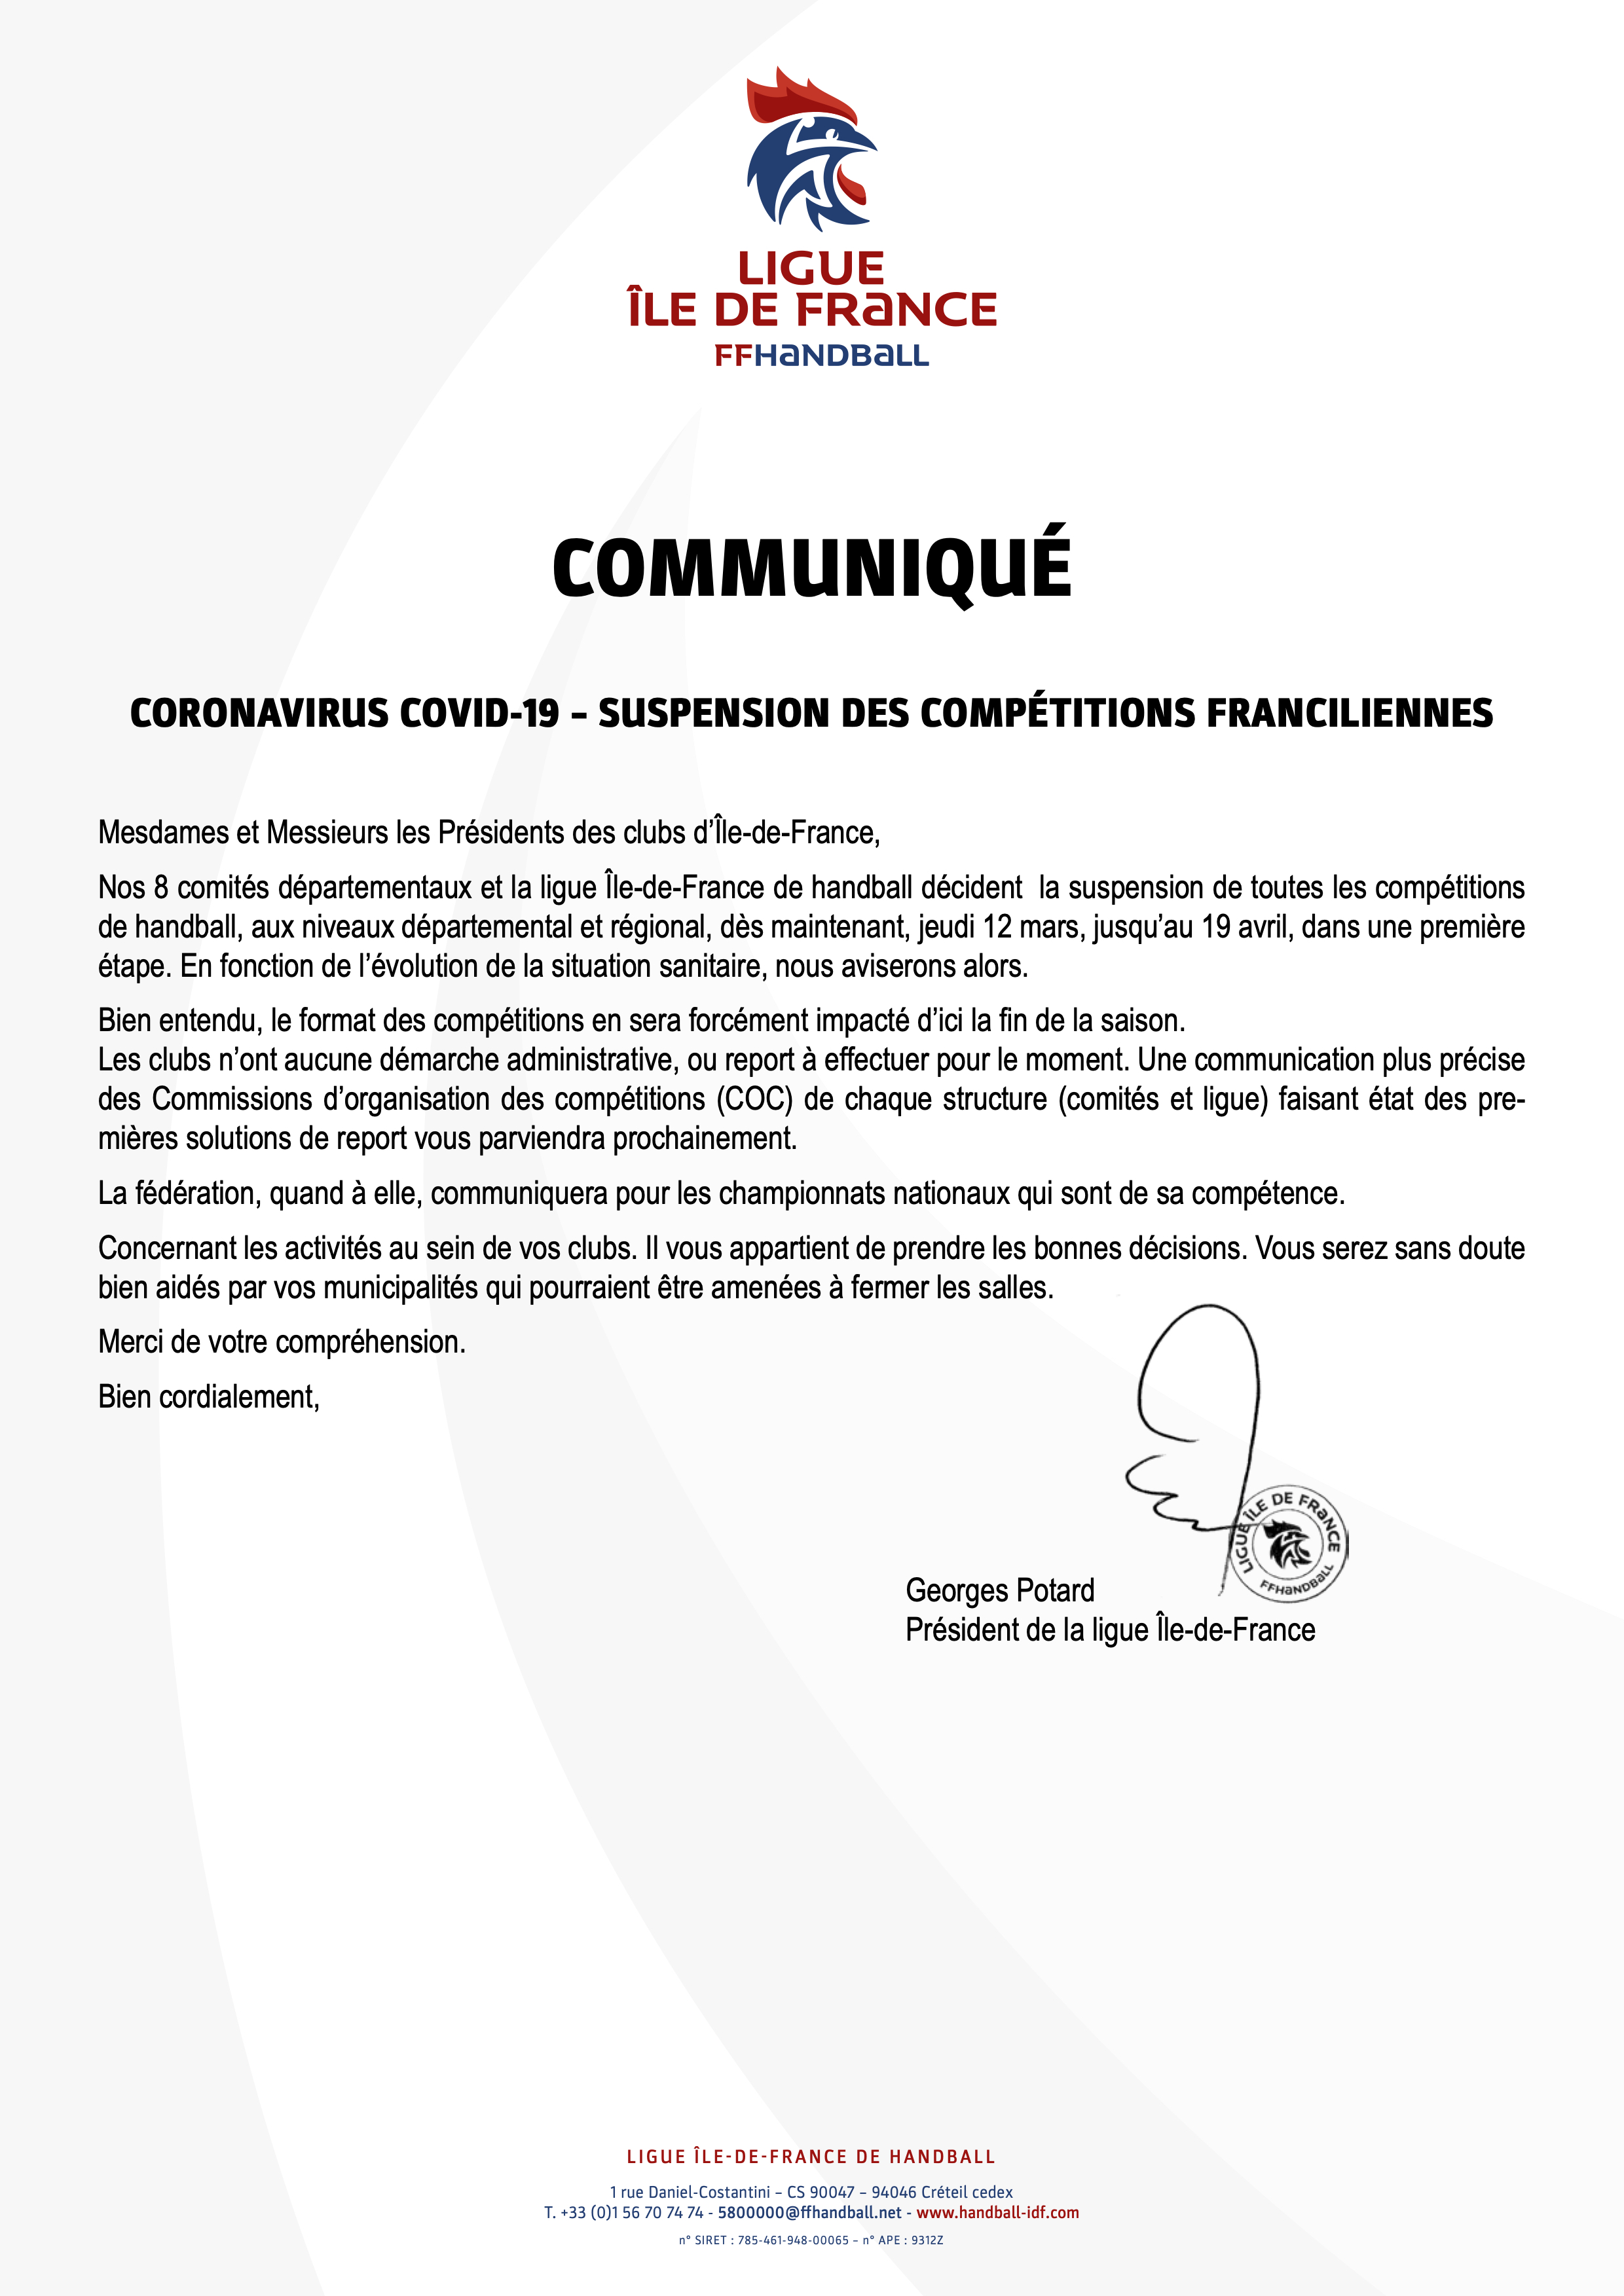 LigueIDF communique suspension championnats